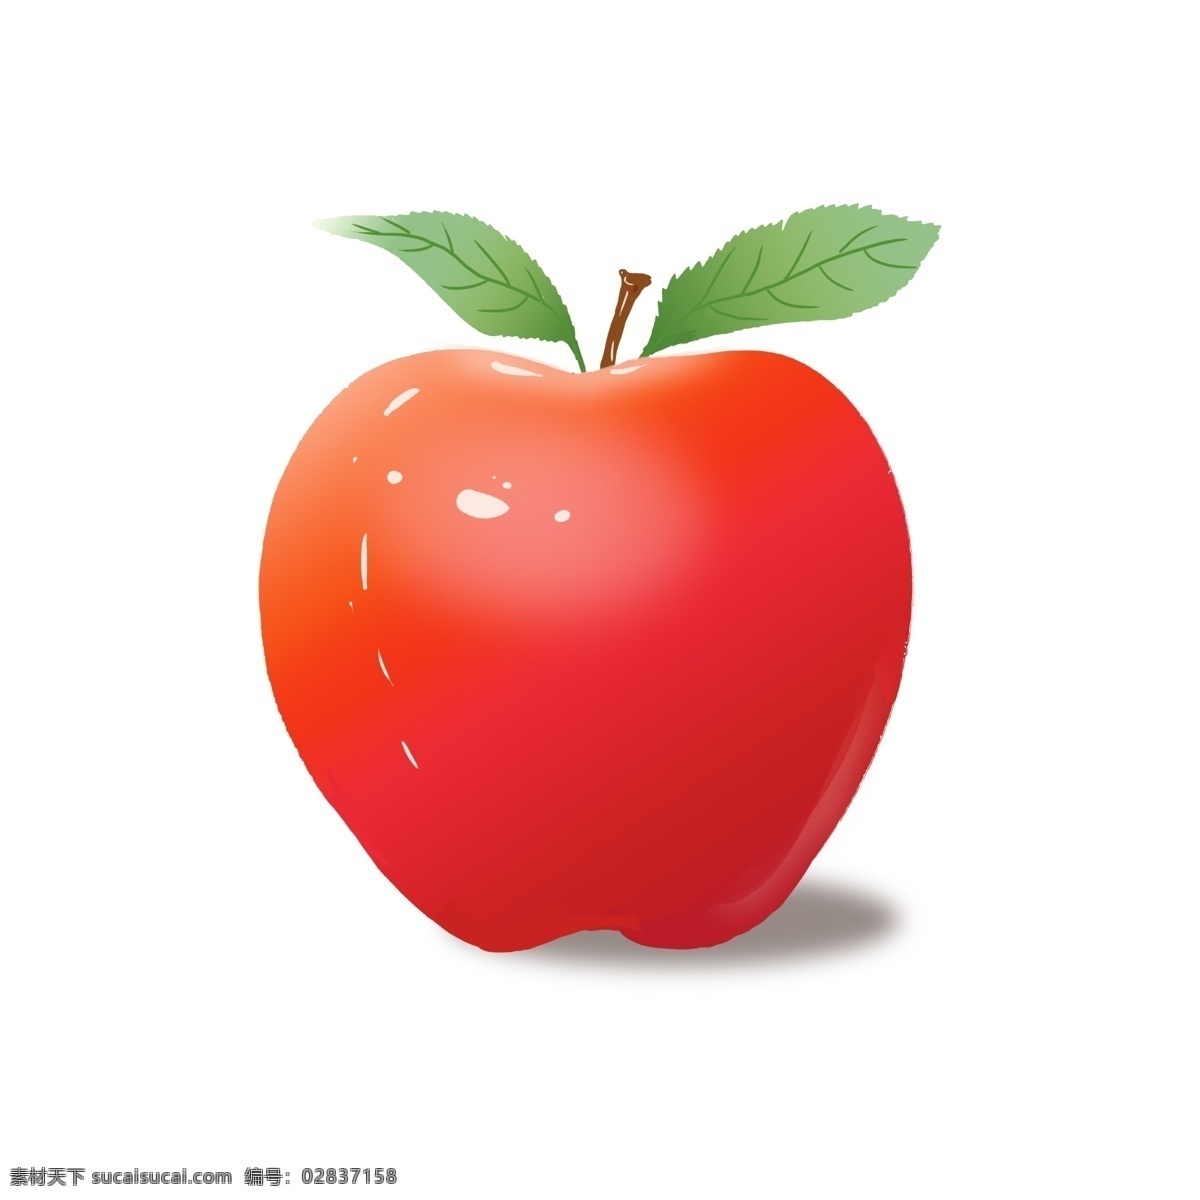 苹果 红色 圣诞节 水果 商用 元素 平安 叶子 喜庆 红色苹果 圣诞节苹果 平安果 平安夜苹果 红苹果 节日水果